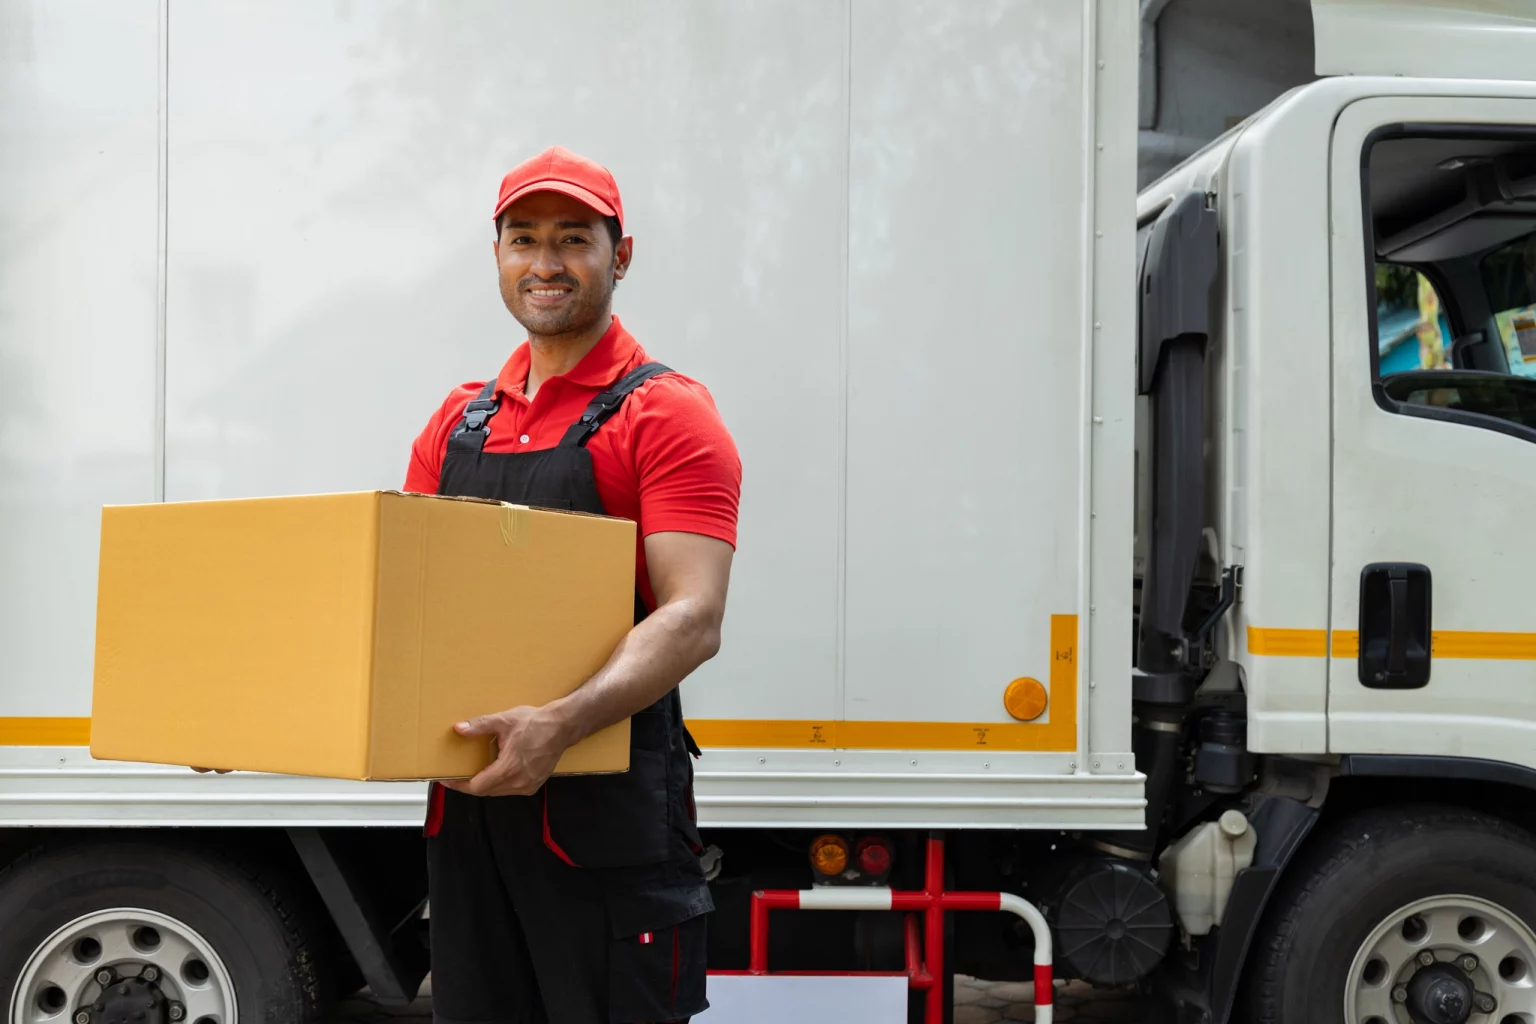 Livreur souriant d'Innovia en tenue de travail rouge et noire, livrant un colis, illustrant le service clientèle convivial et professionnel de l'entreprise de transport.